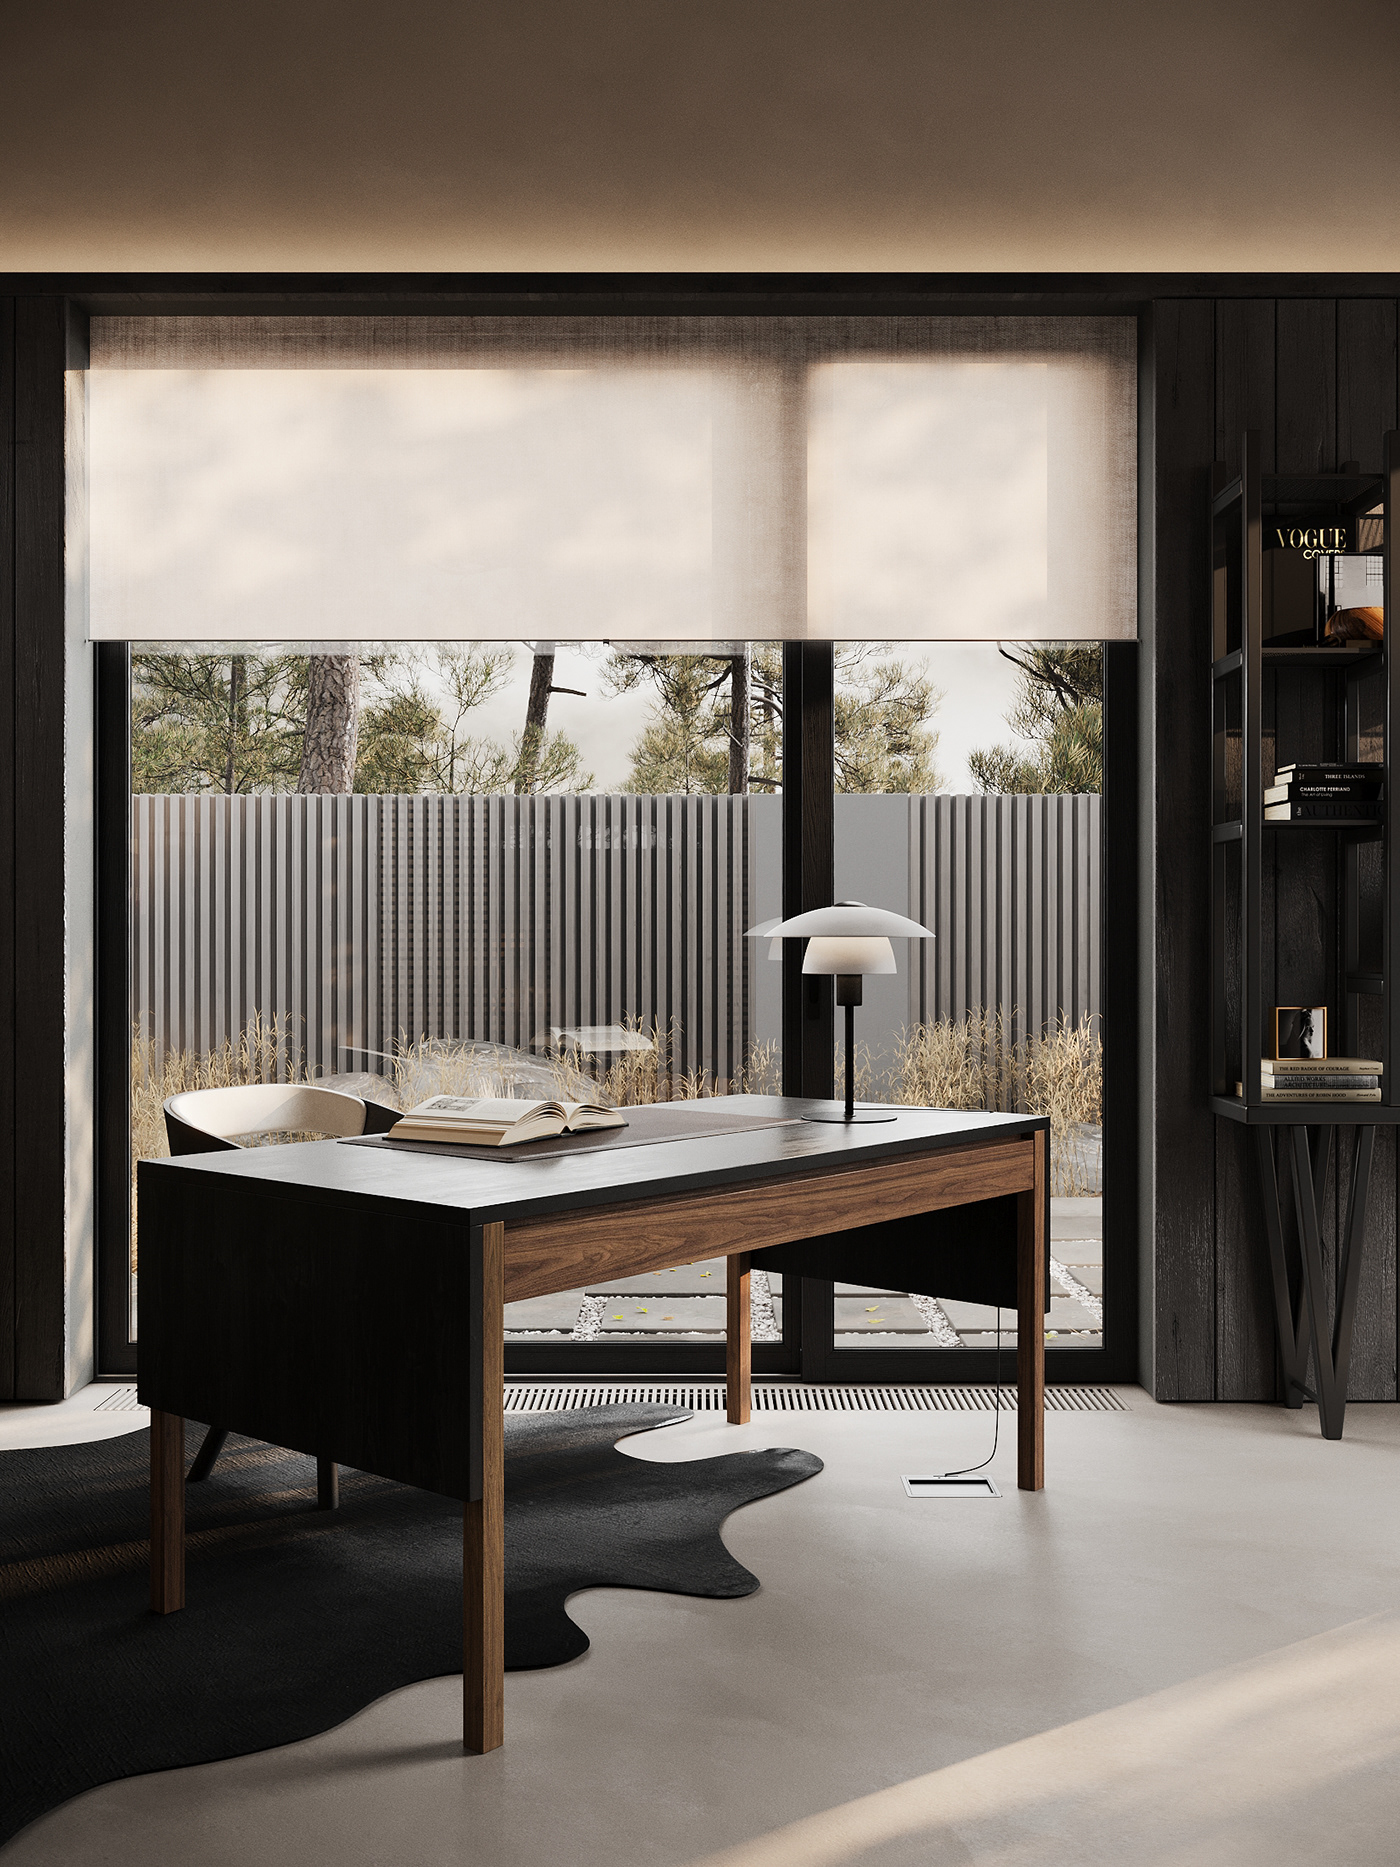 3D 3ds max bathroom bedroom kitchen living room Render visualization